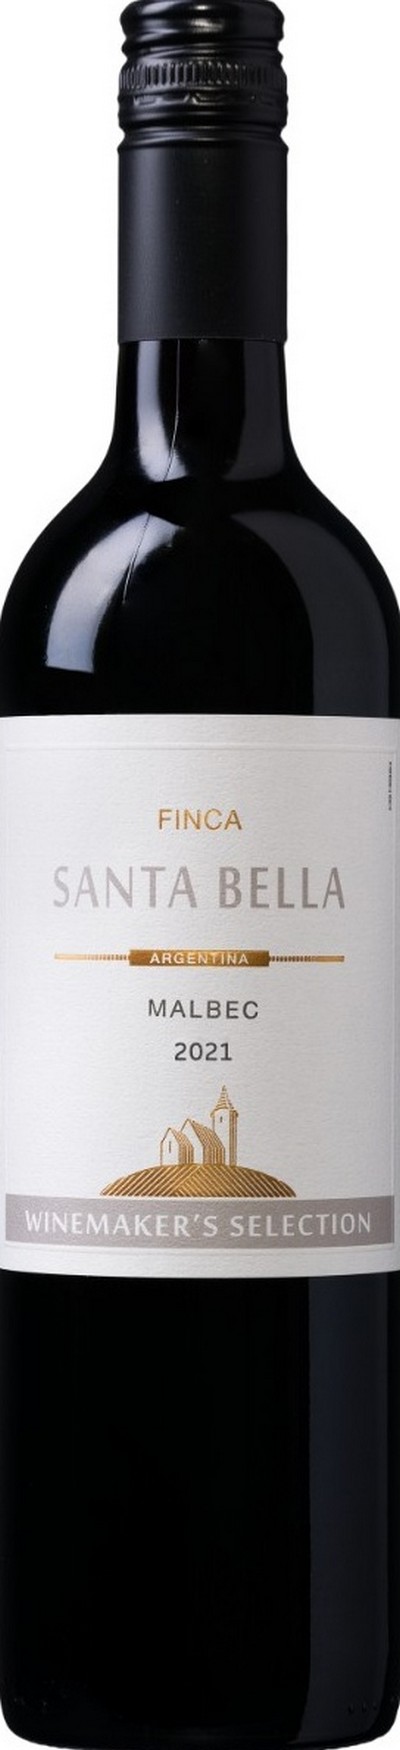 finca-santa-bella-malbec-argentina-2021